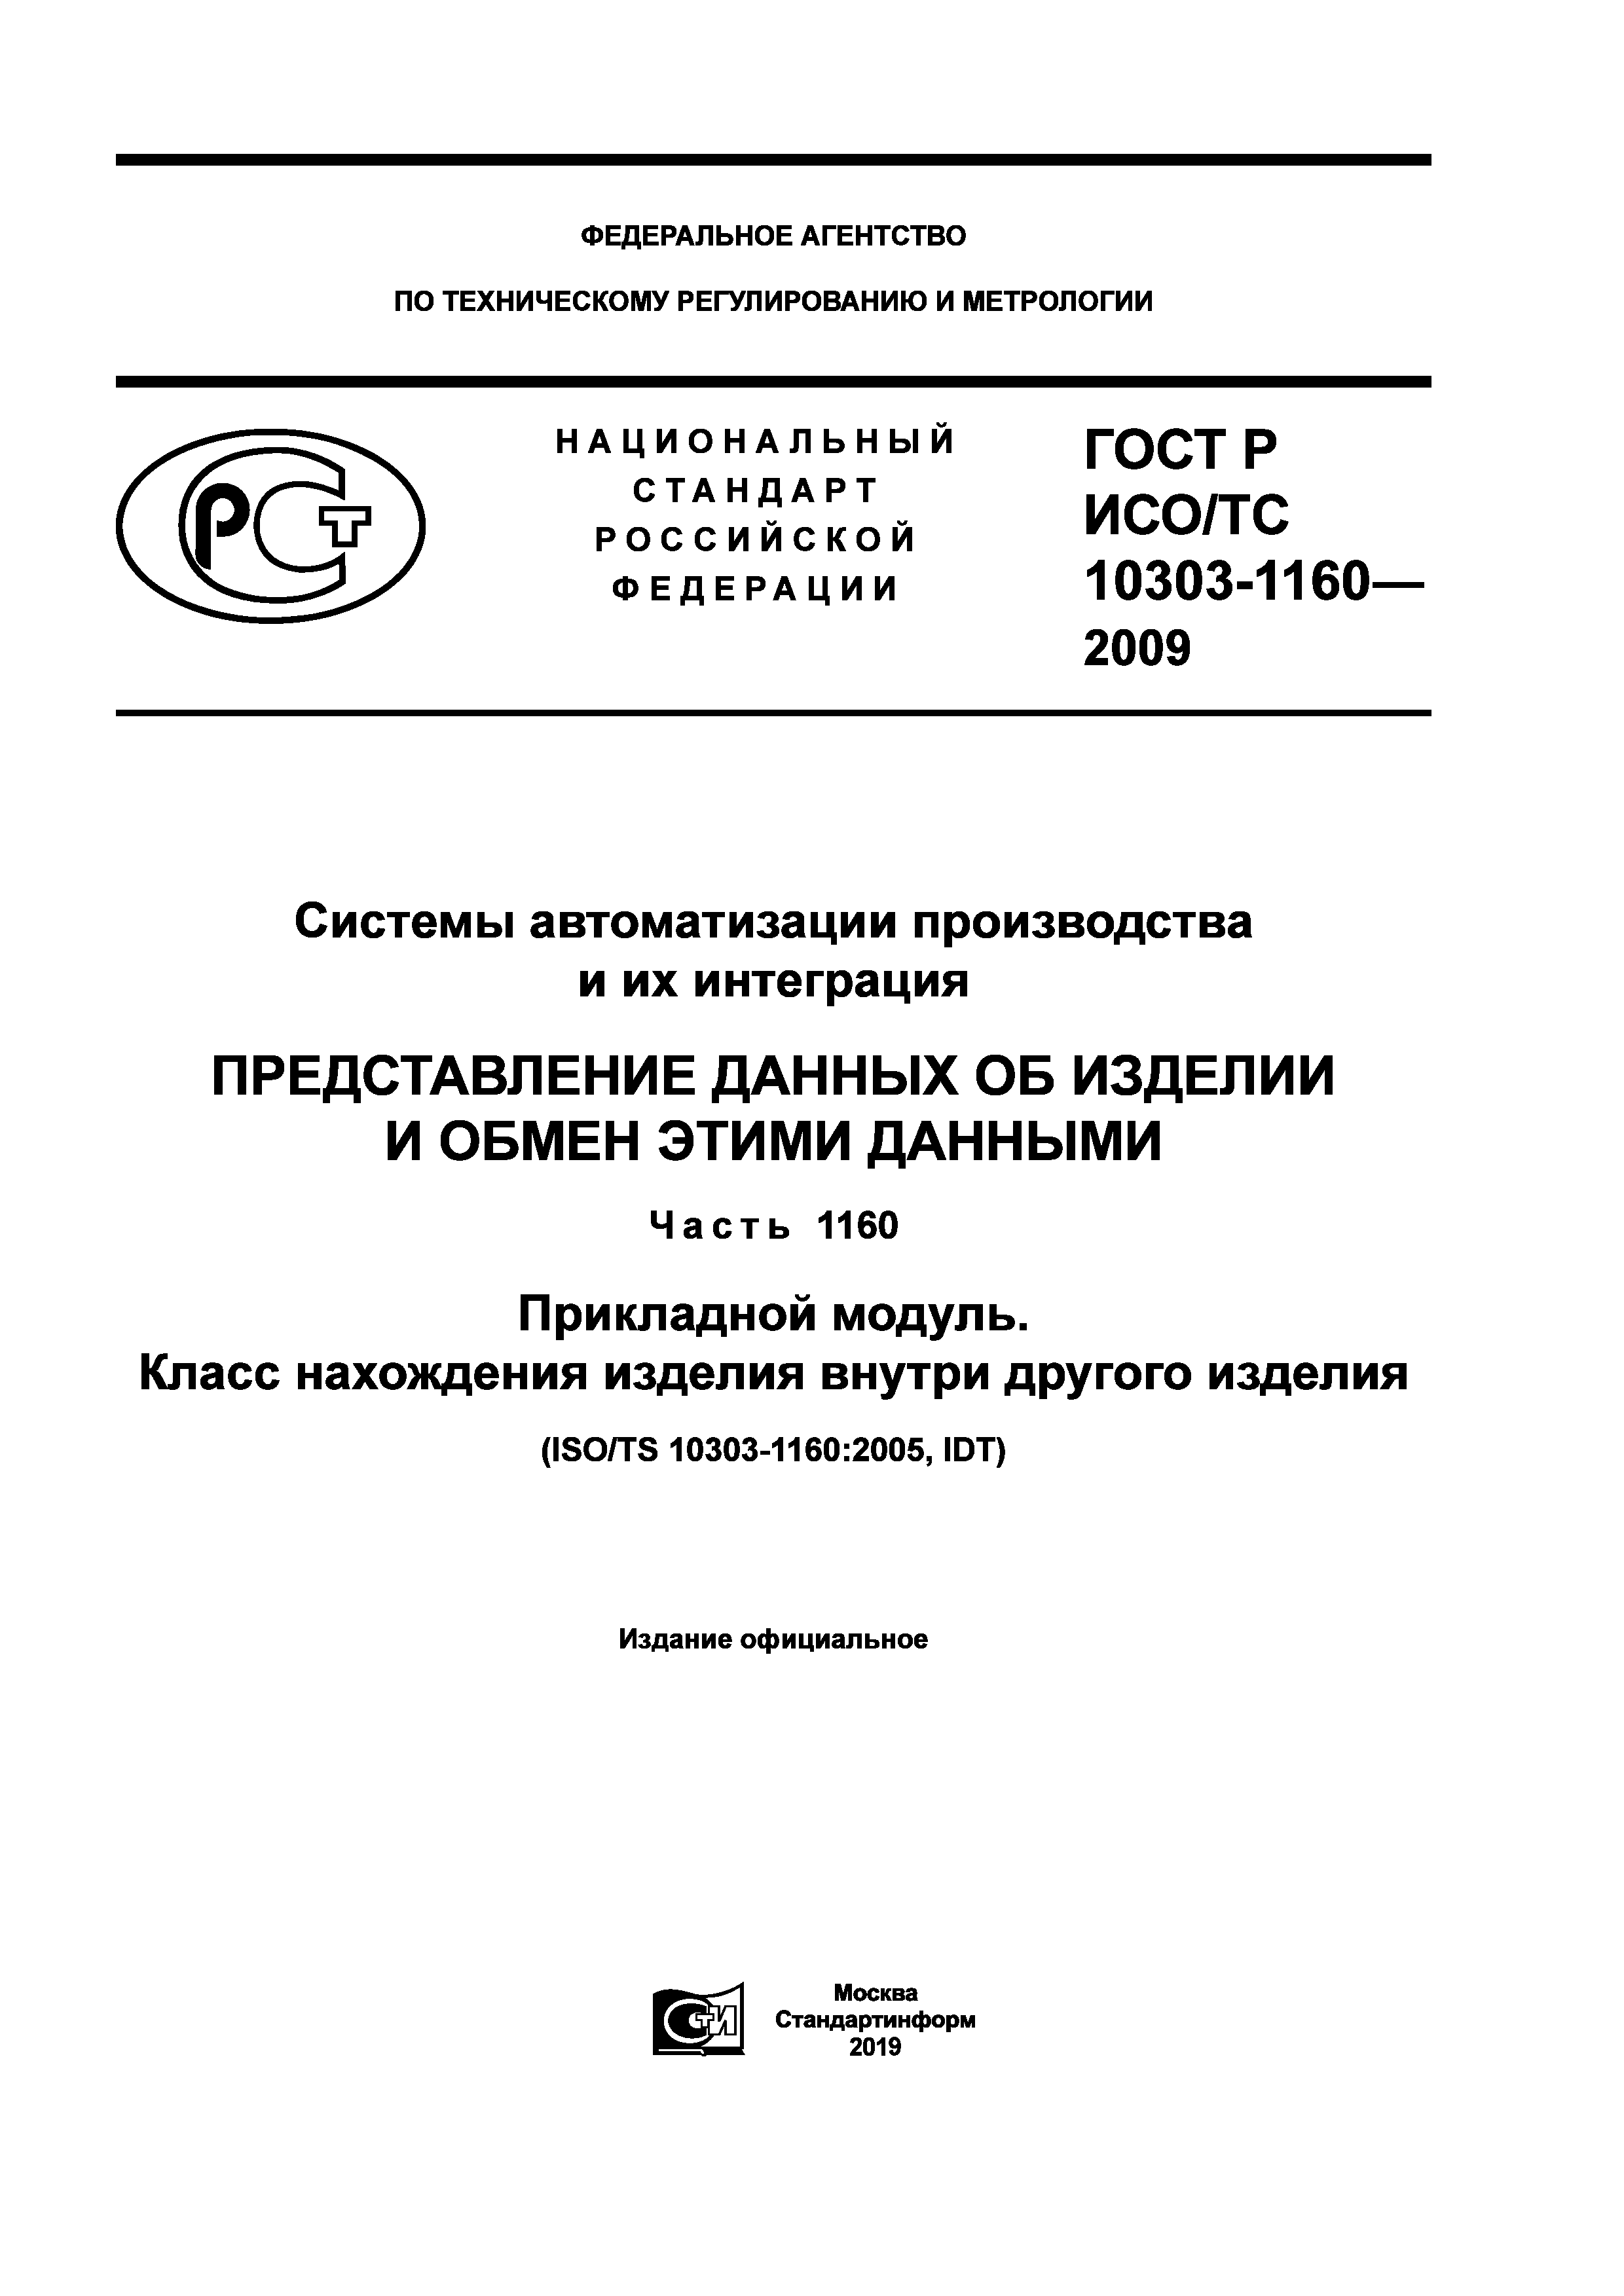 ГОСТ Р ИСО/ТС 10303-1160-2009